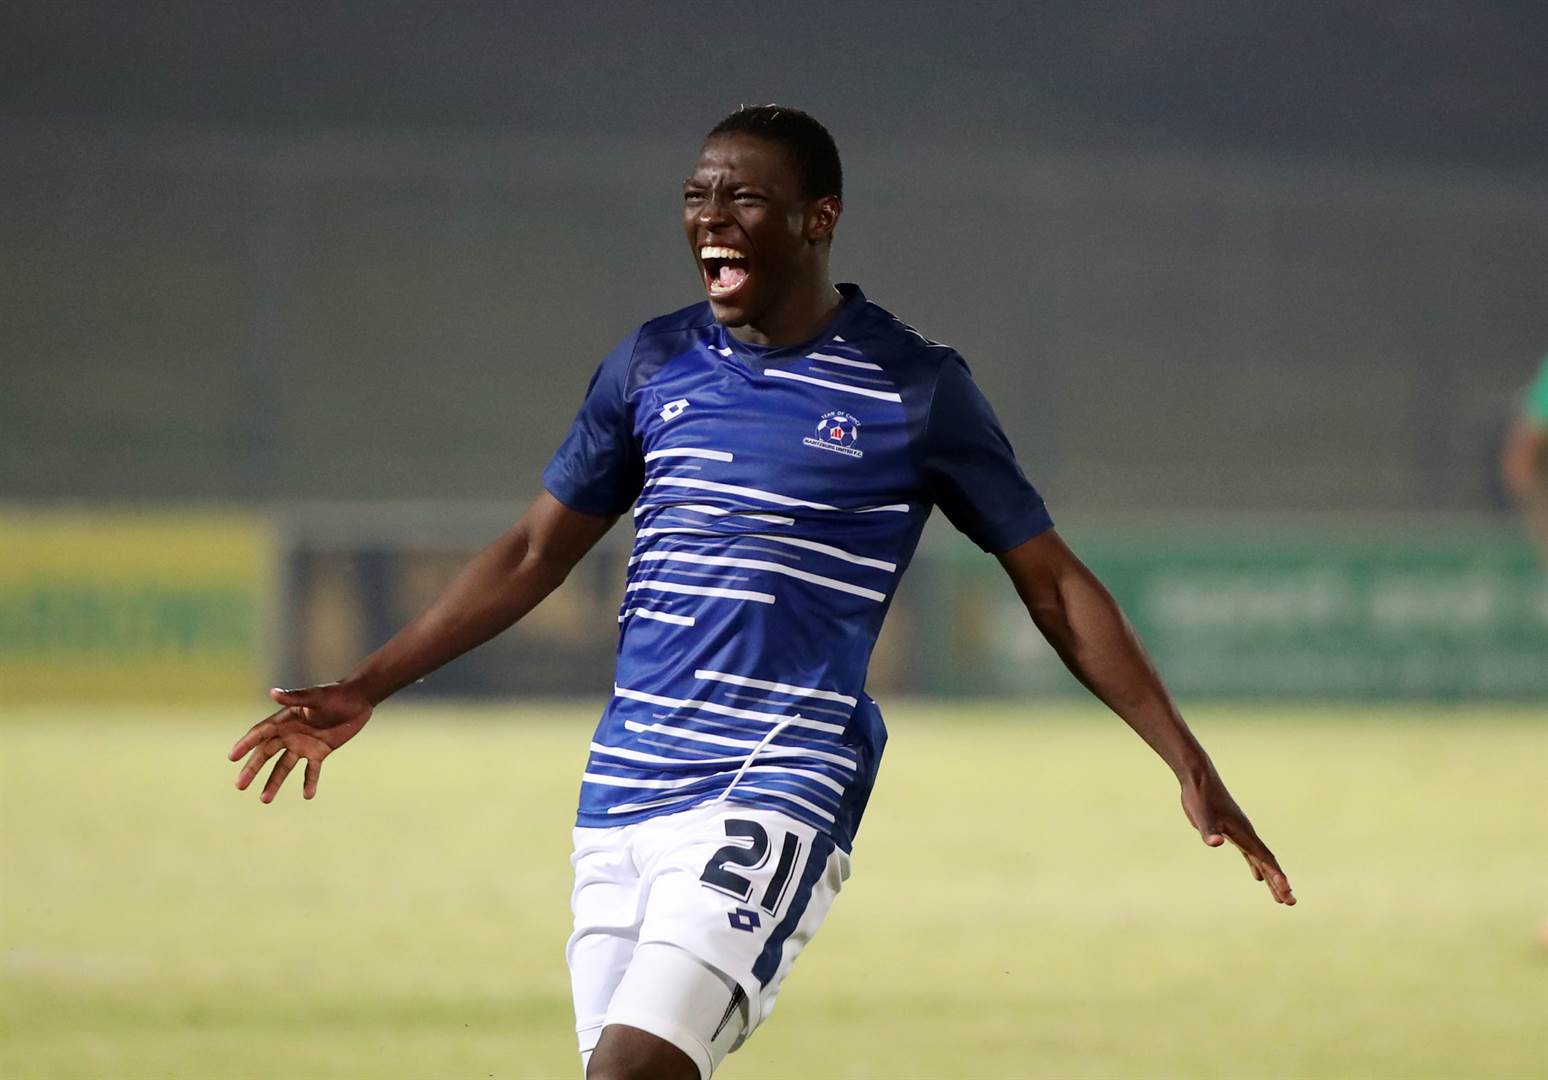 =9. Bongokuhle Hlongwane (21) – Maritzburg United 